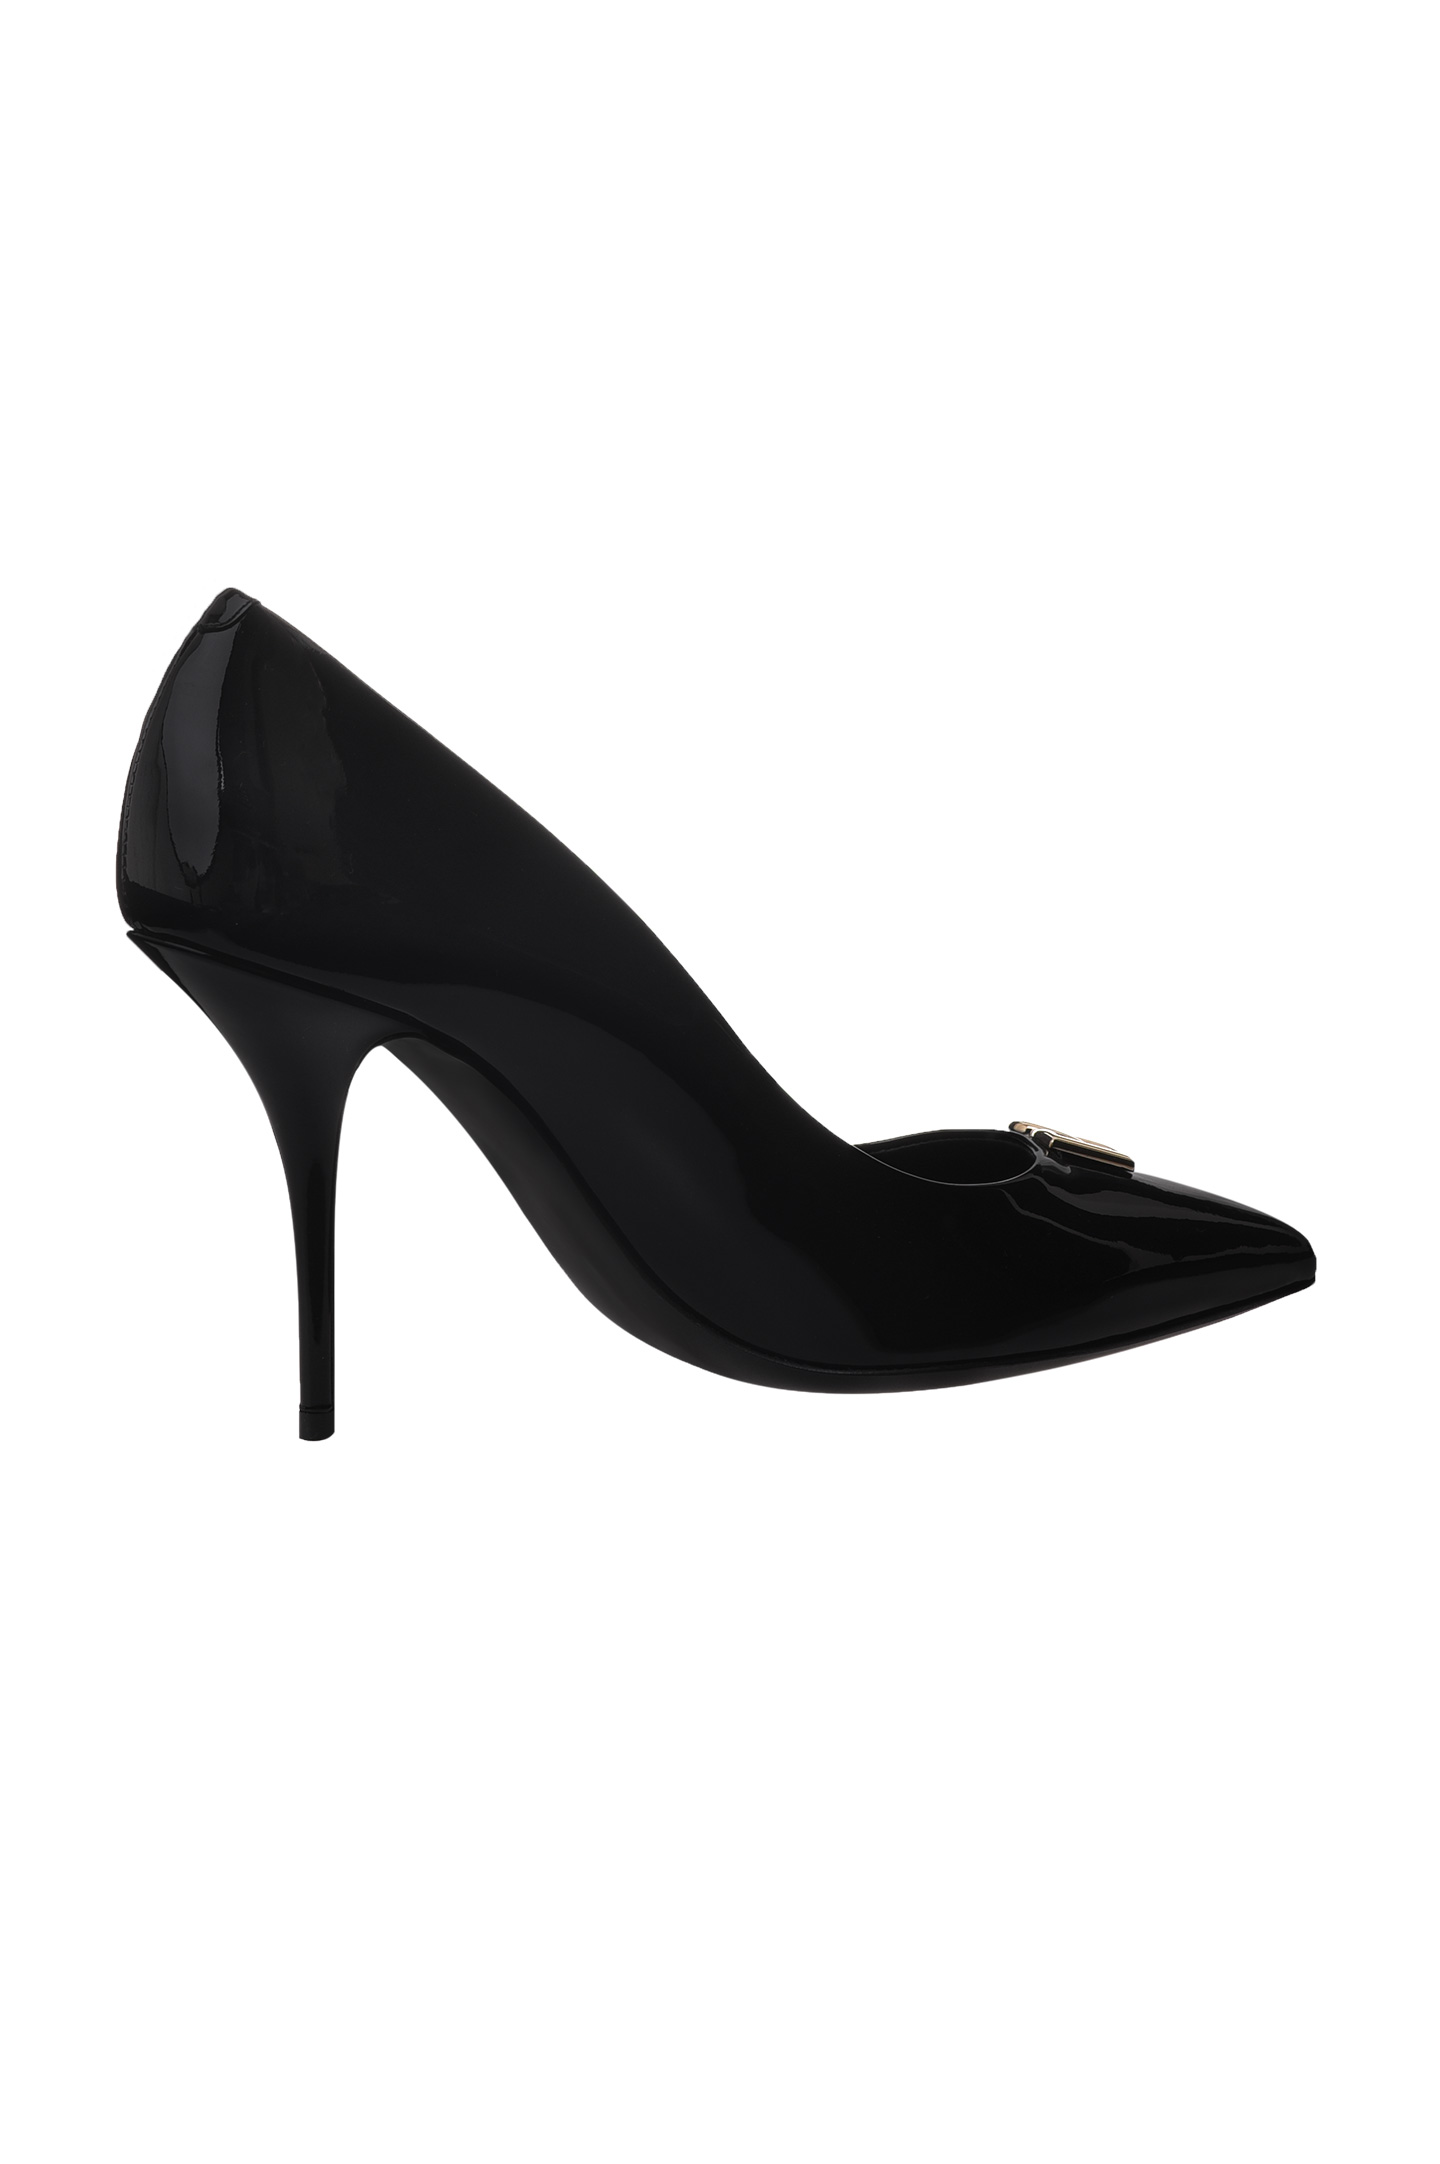 Туфли DOLCE & GABBANA CD1648 A1471, цвет: Черный, Женский